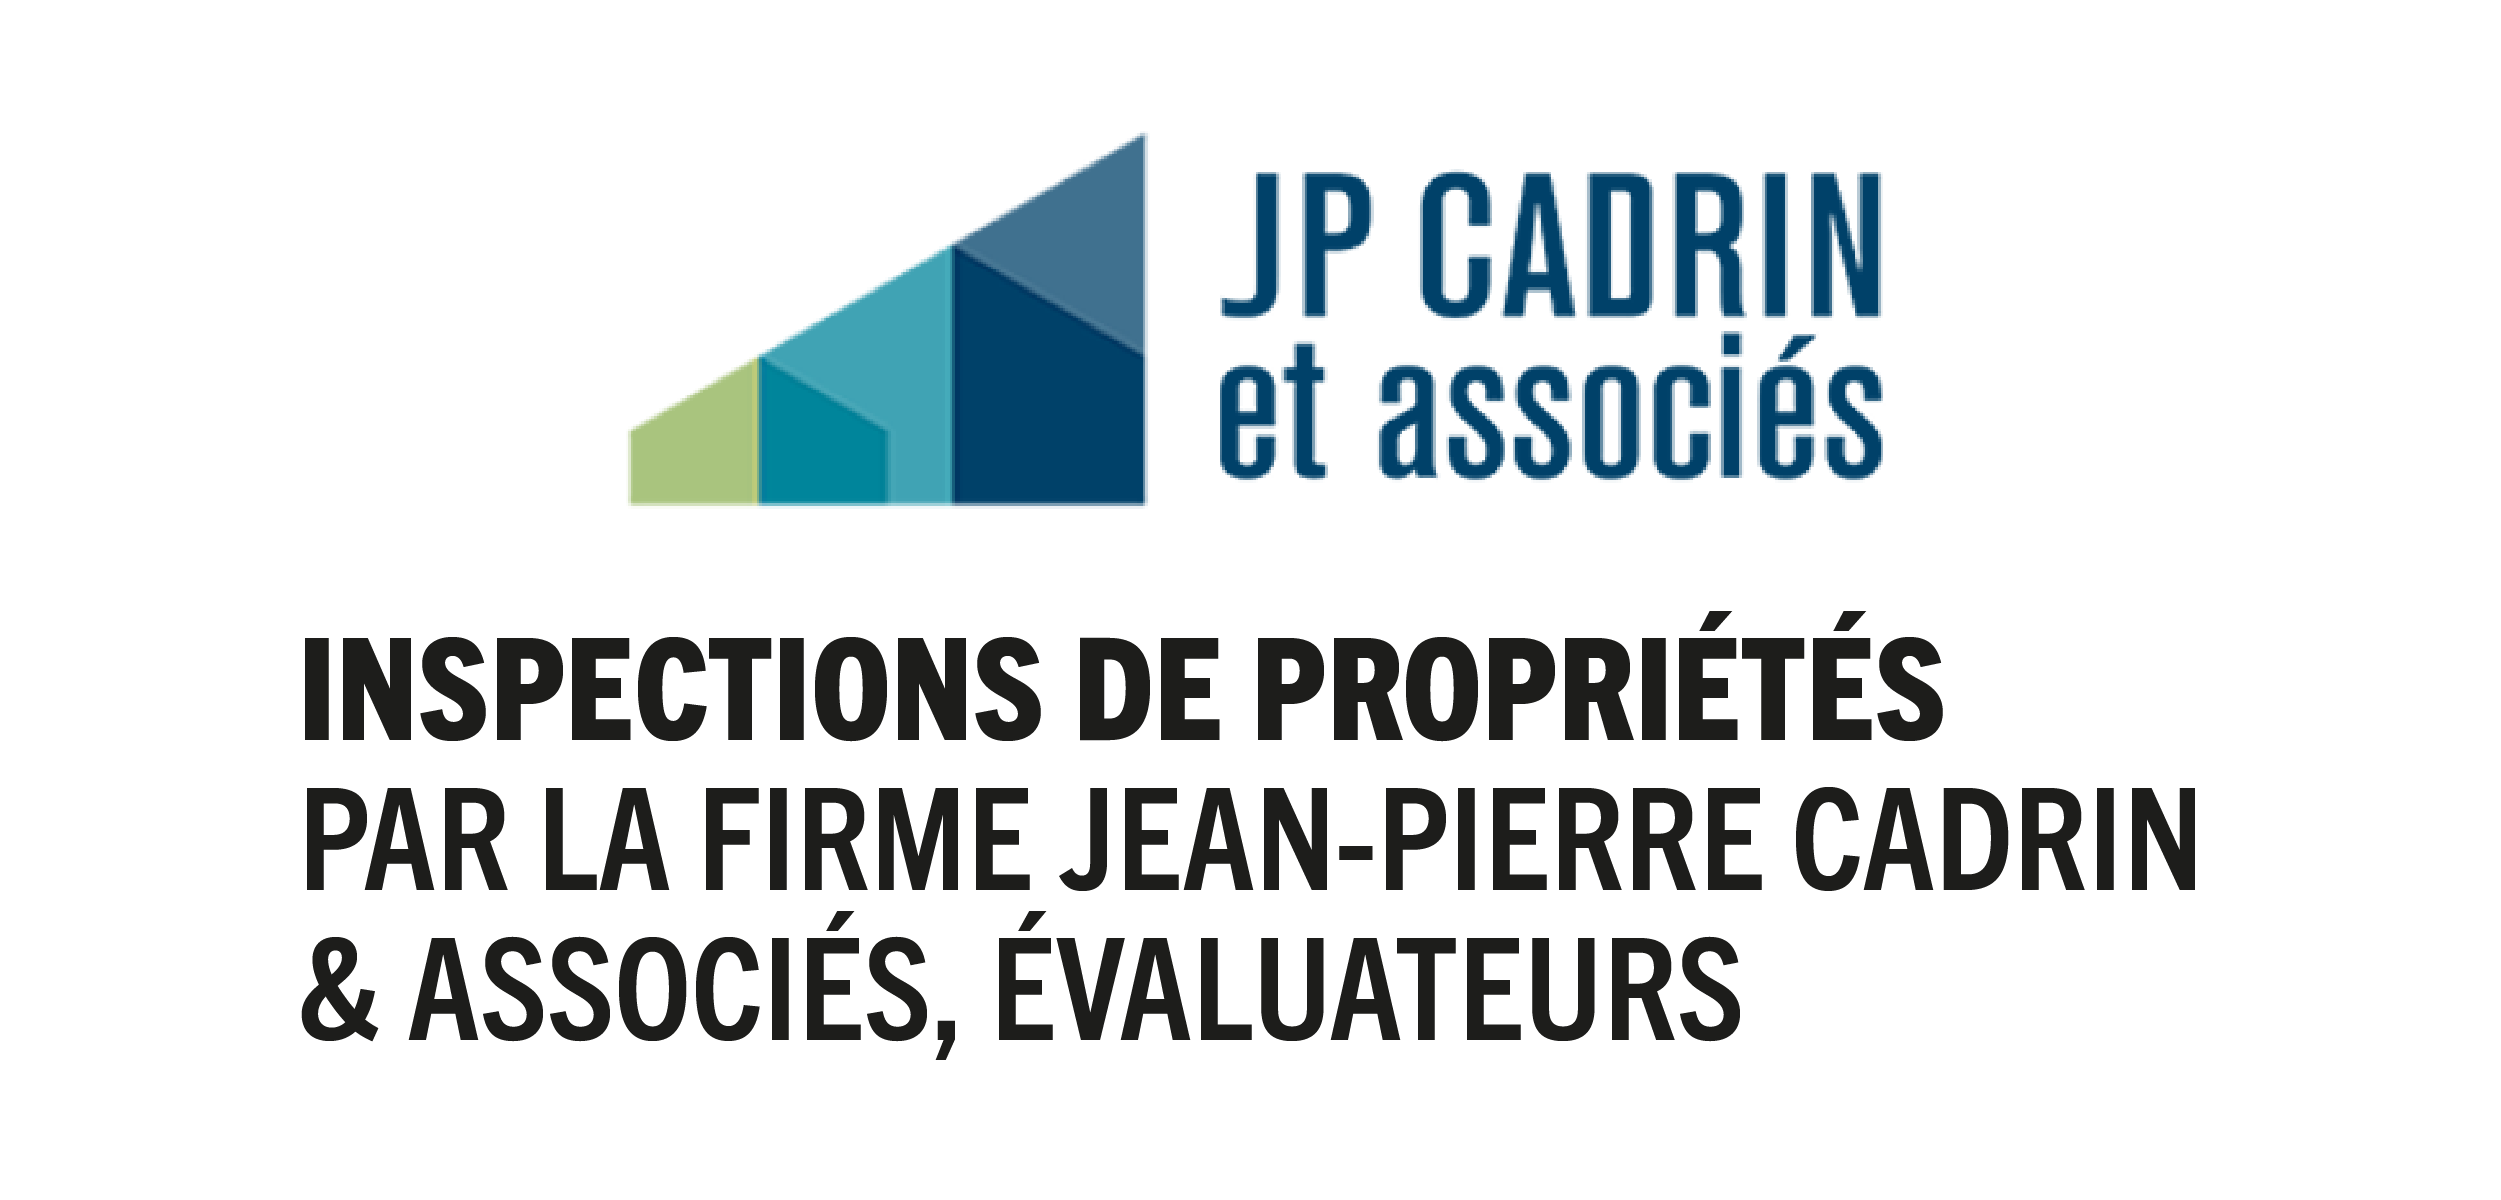 Inspections de propriétés par la firme Jean-Pierre Cadrin & associés, évaluateurs